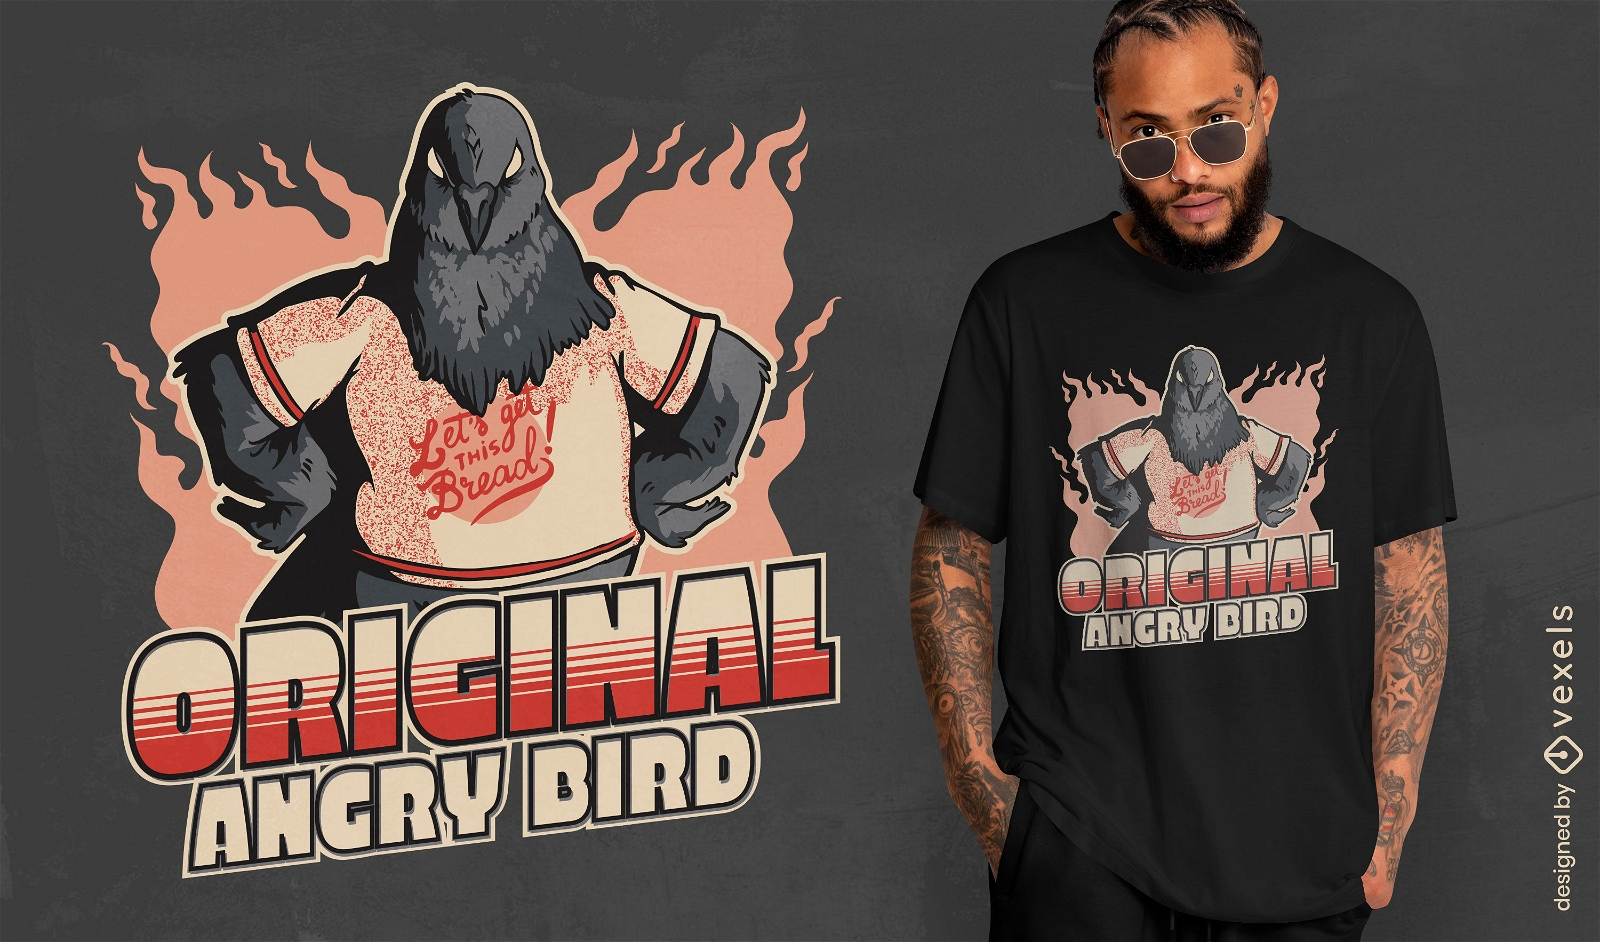 Angry bird t-shirt design